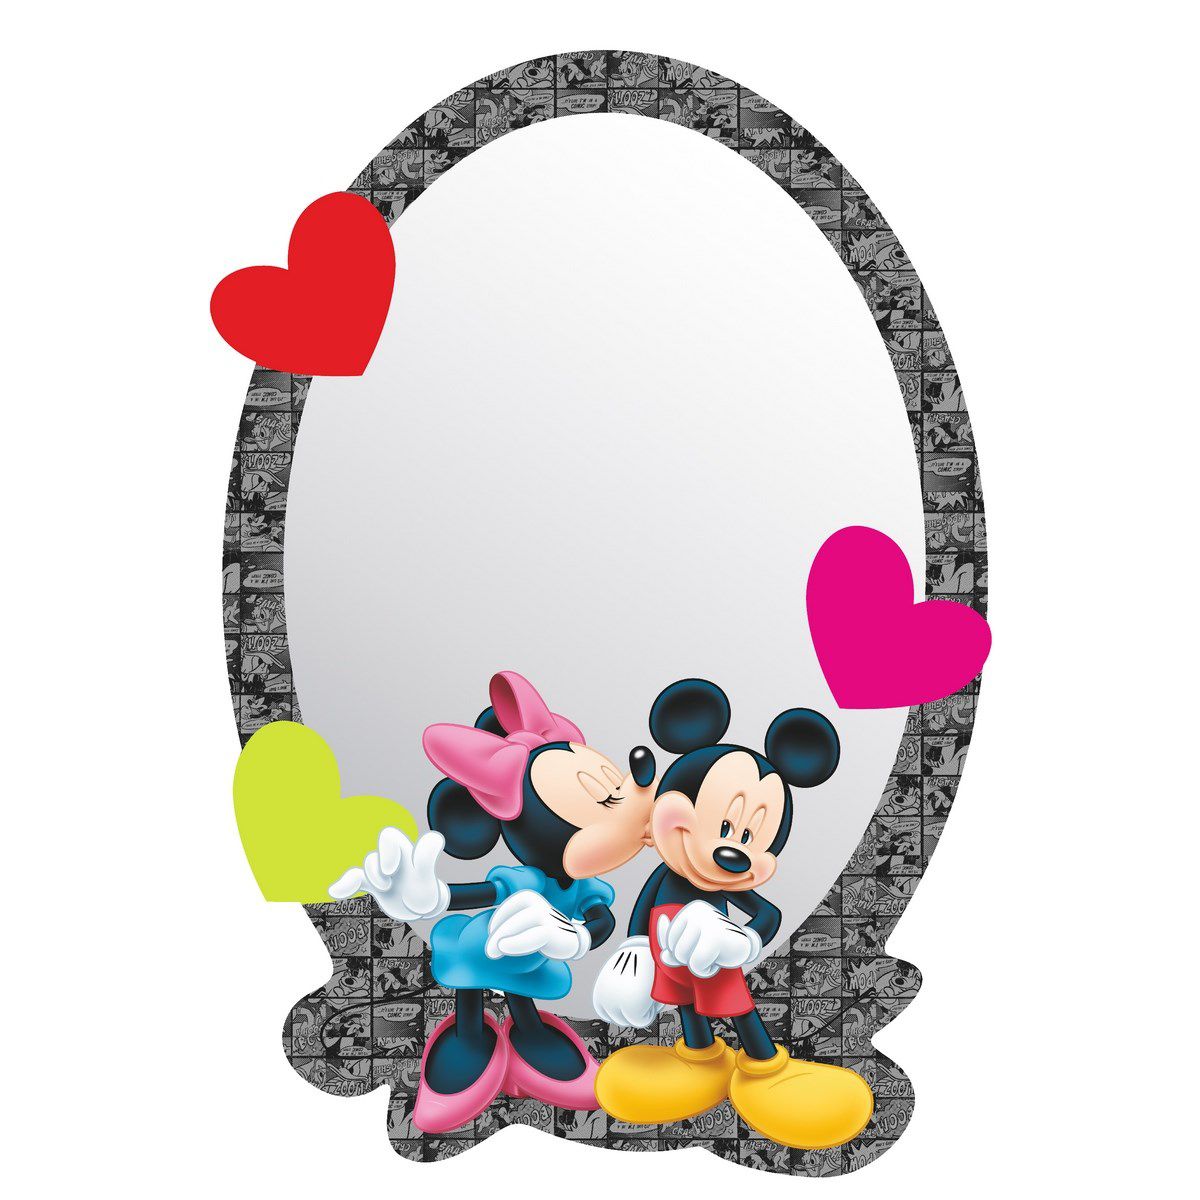 AG Art Samolepicí dětské zrcadlo Mickey & Minnie, 15 x 21,5 cm  - 4home.cz